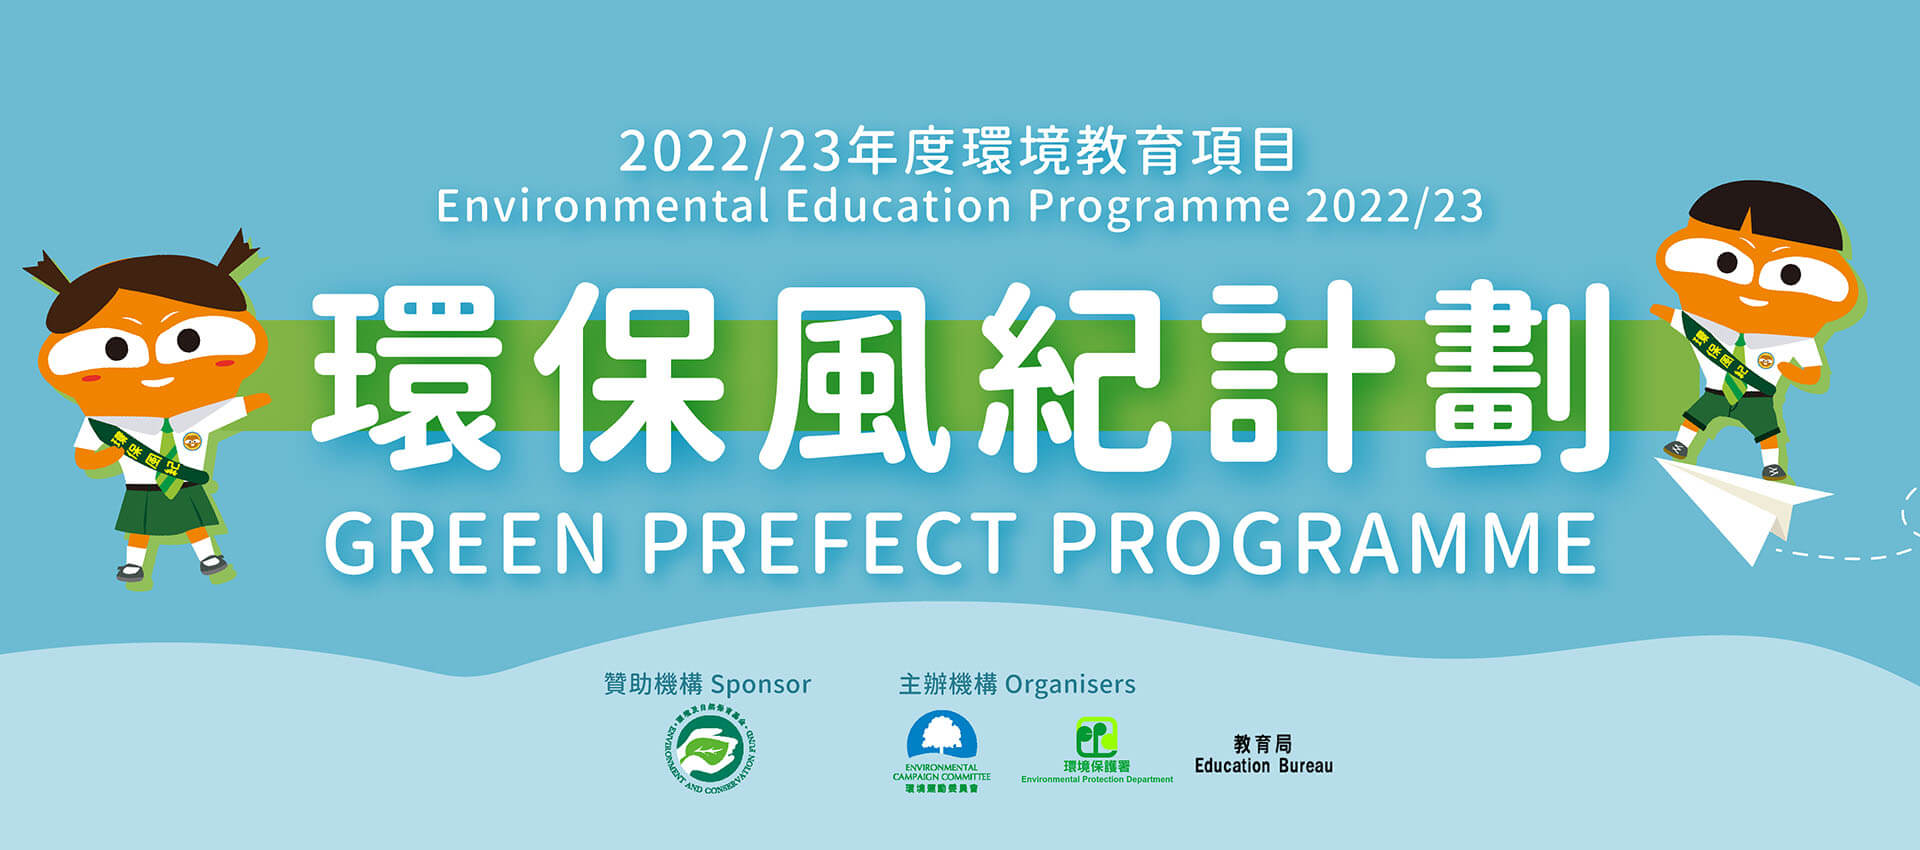 2022/23年度 環境教育項目 - 環保風紀計劃